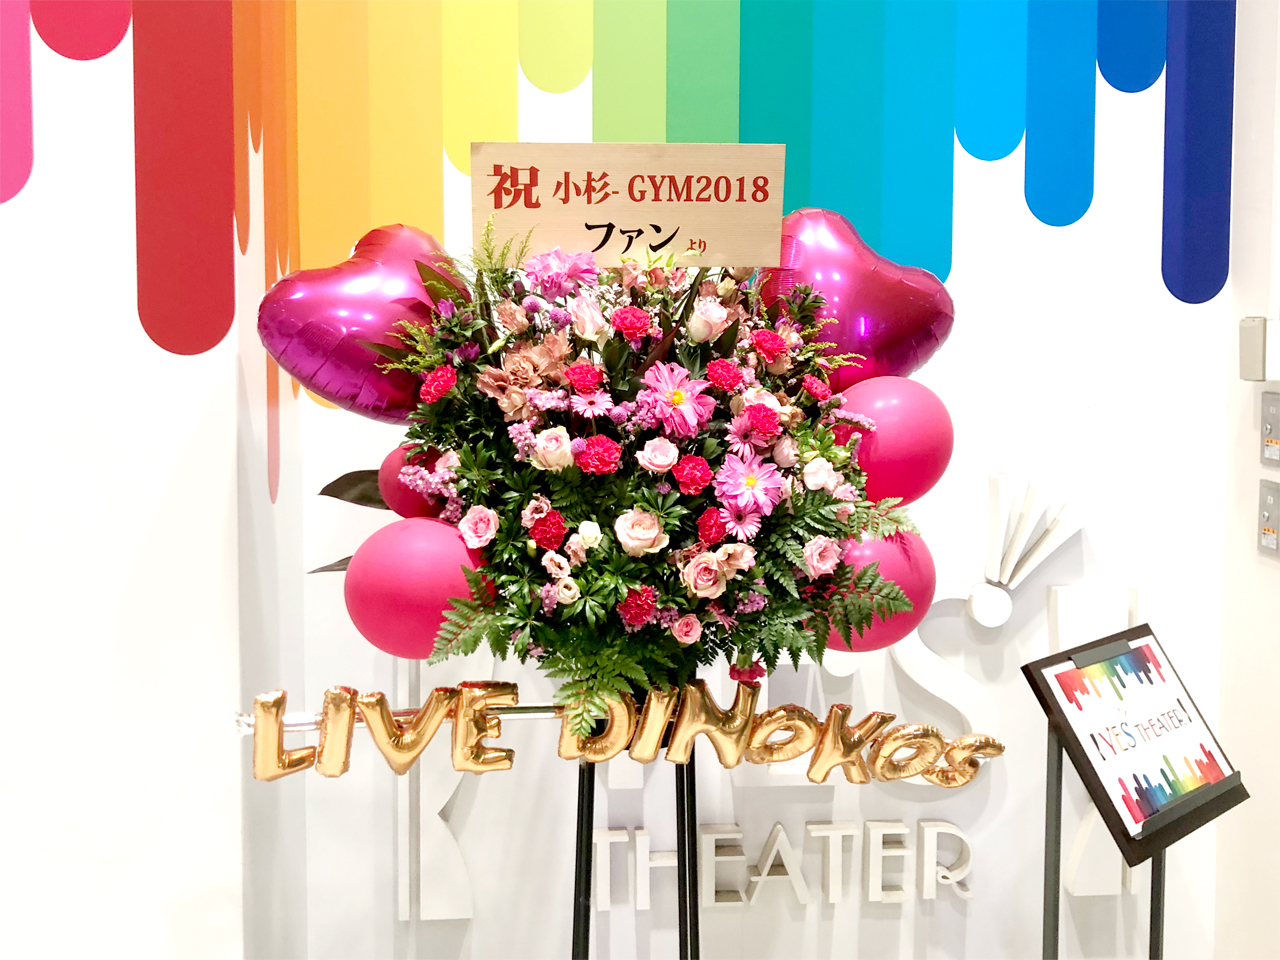 小杉-GYM 2018 “LIVE DINOKOSU” お花